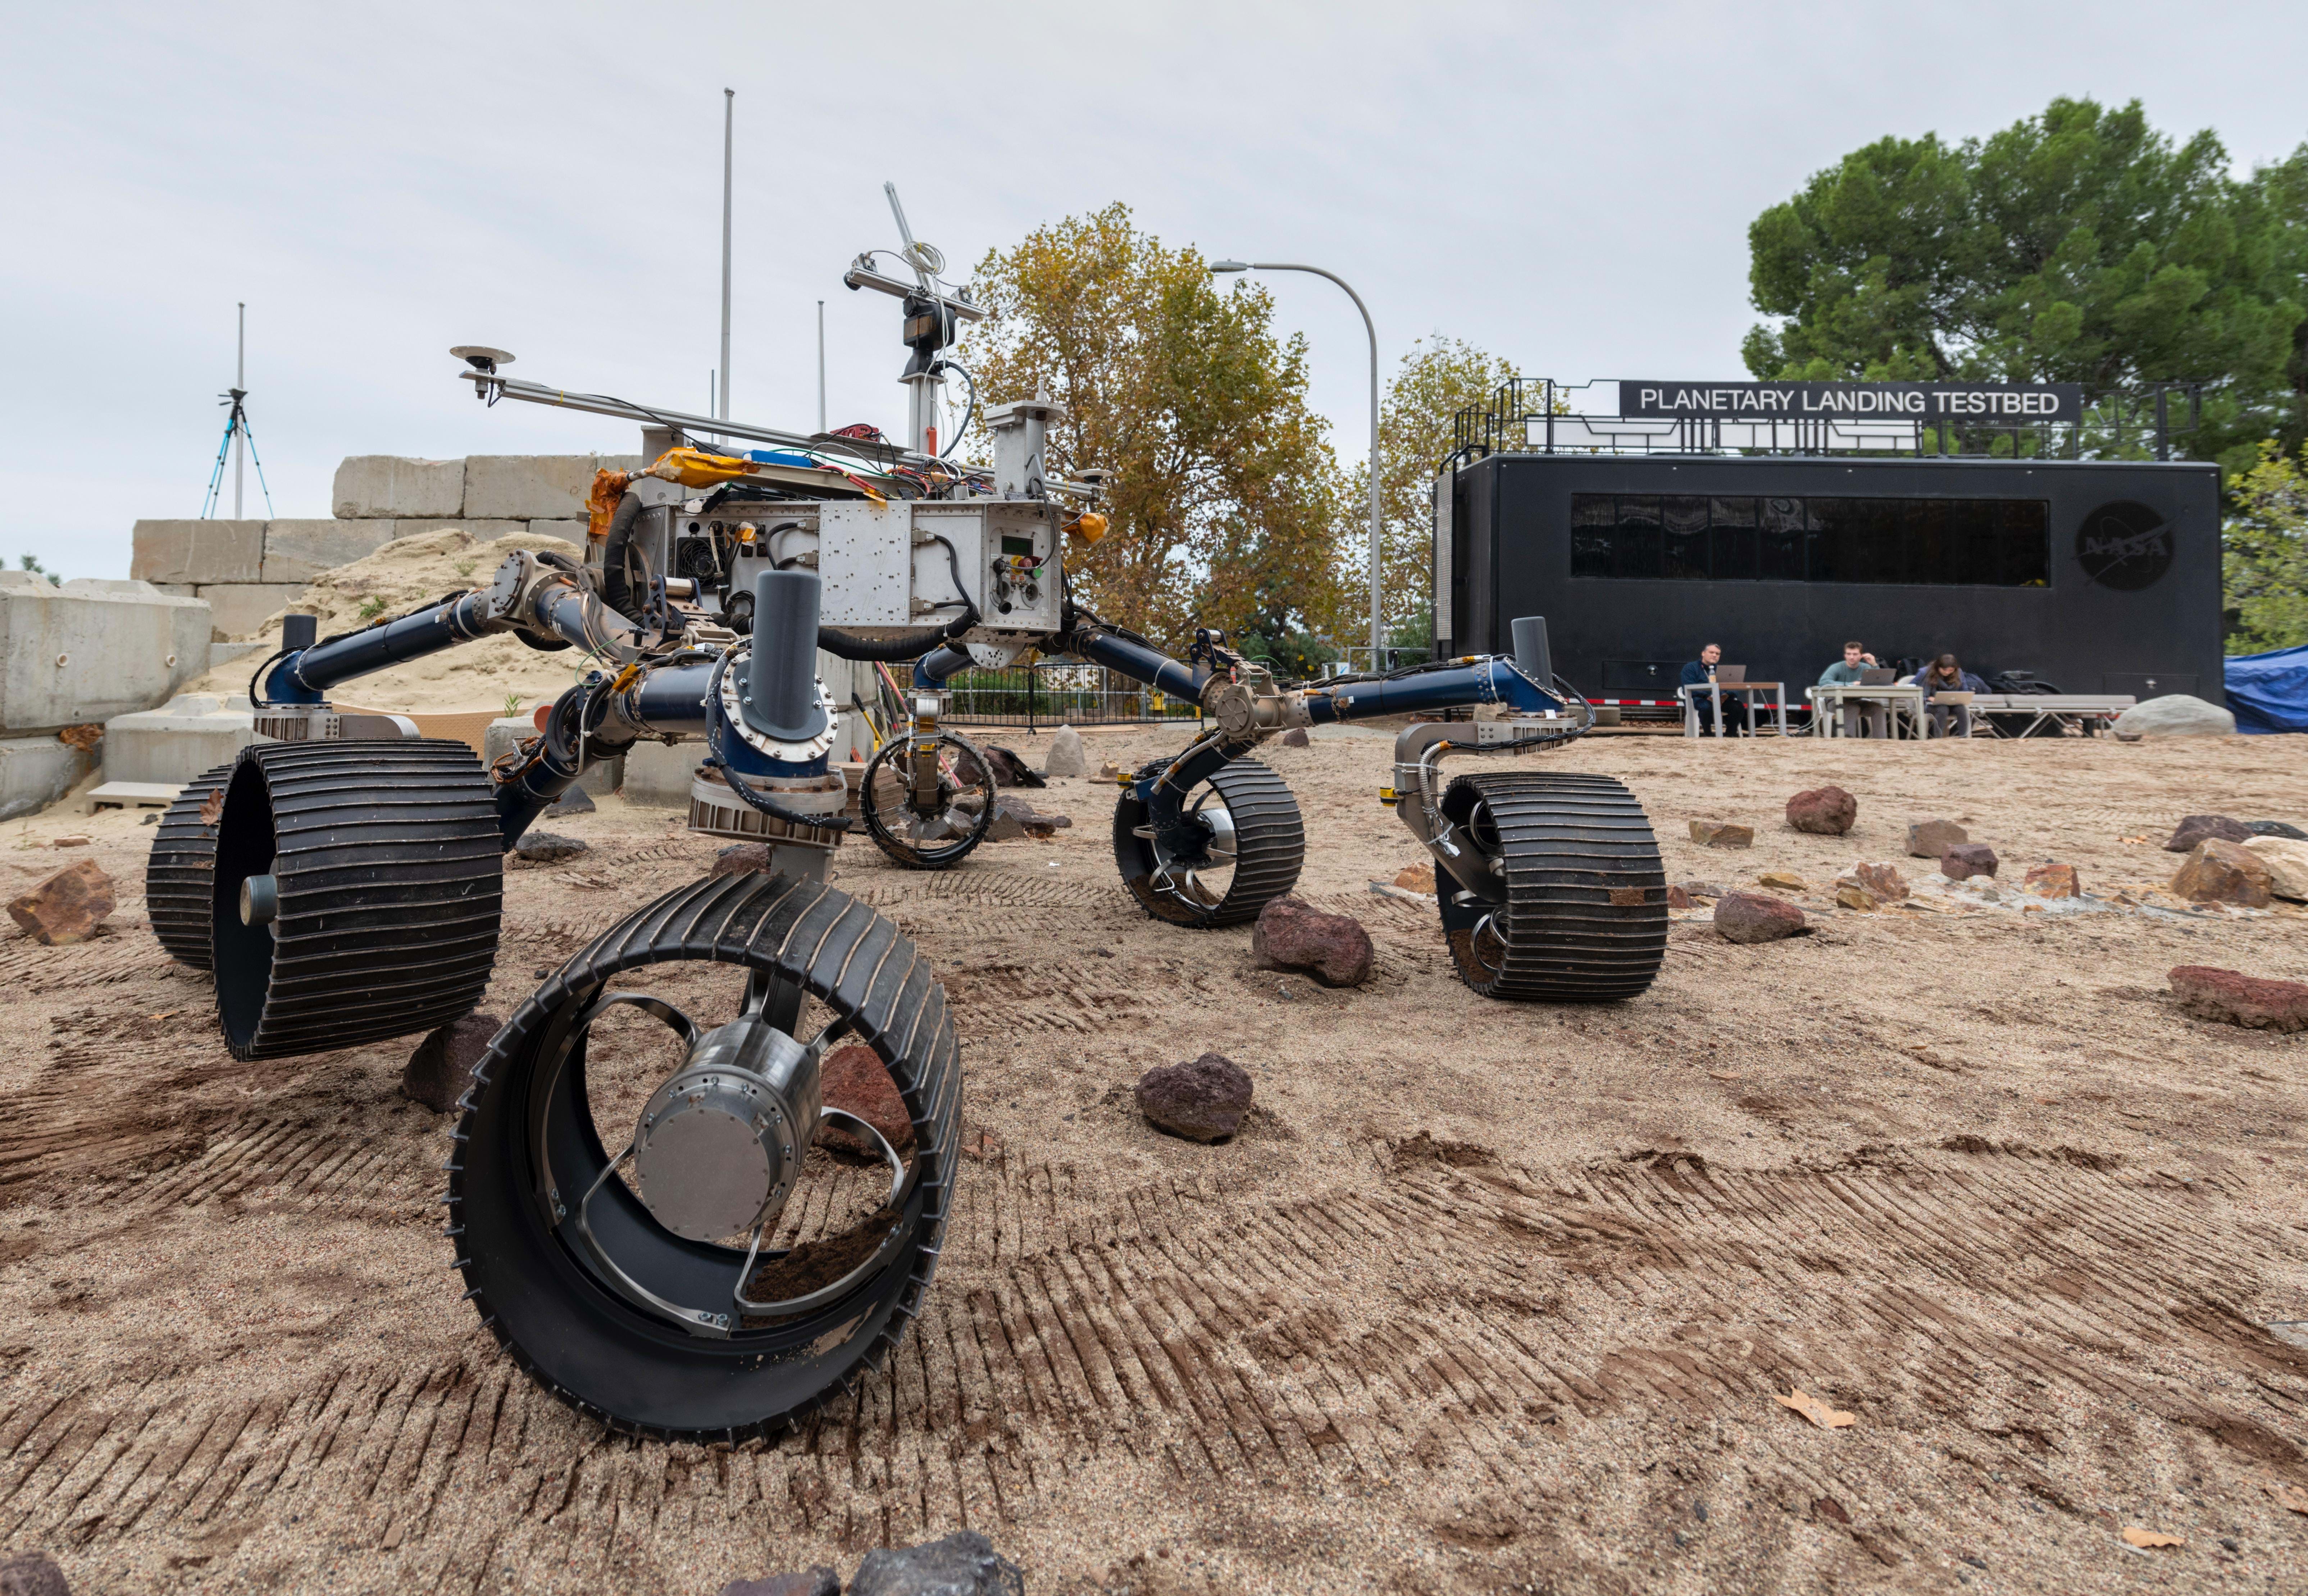 NASA's Mars 2020 rover on the Mars Yard at NASA's Jet Propulsion Laboratory